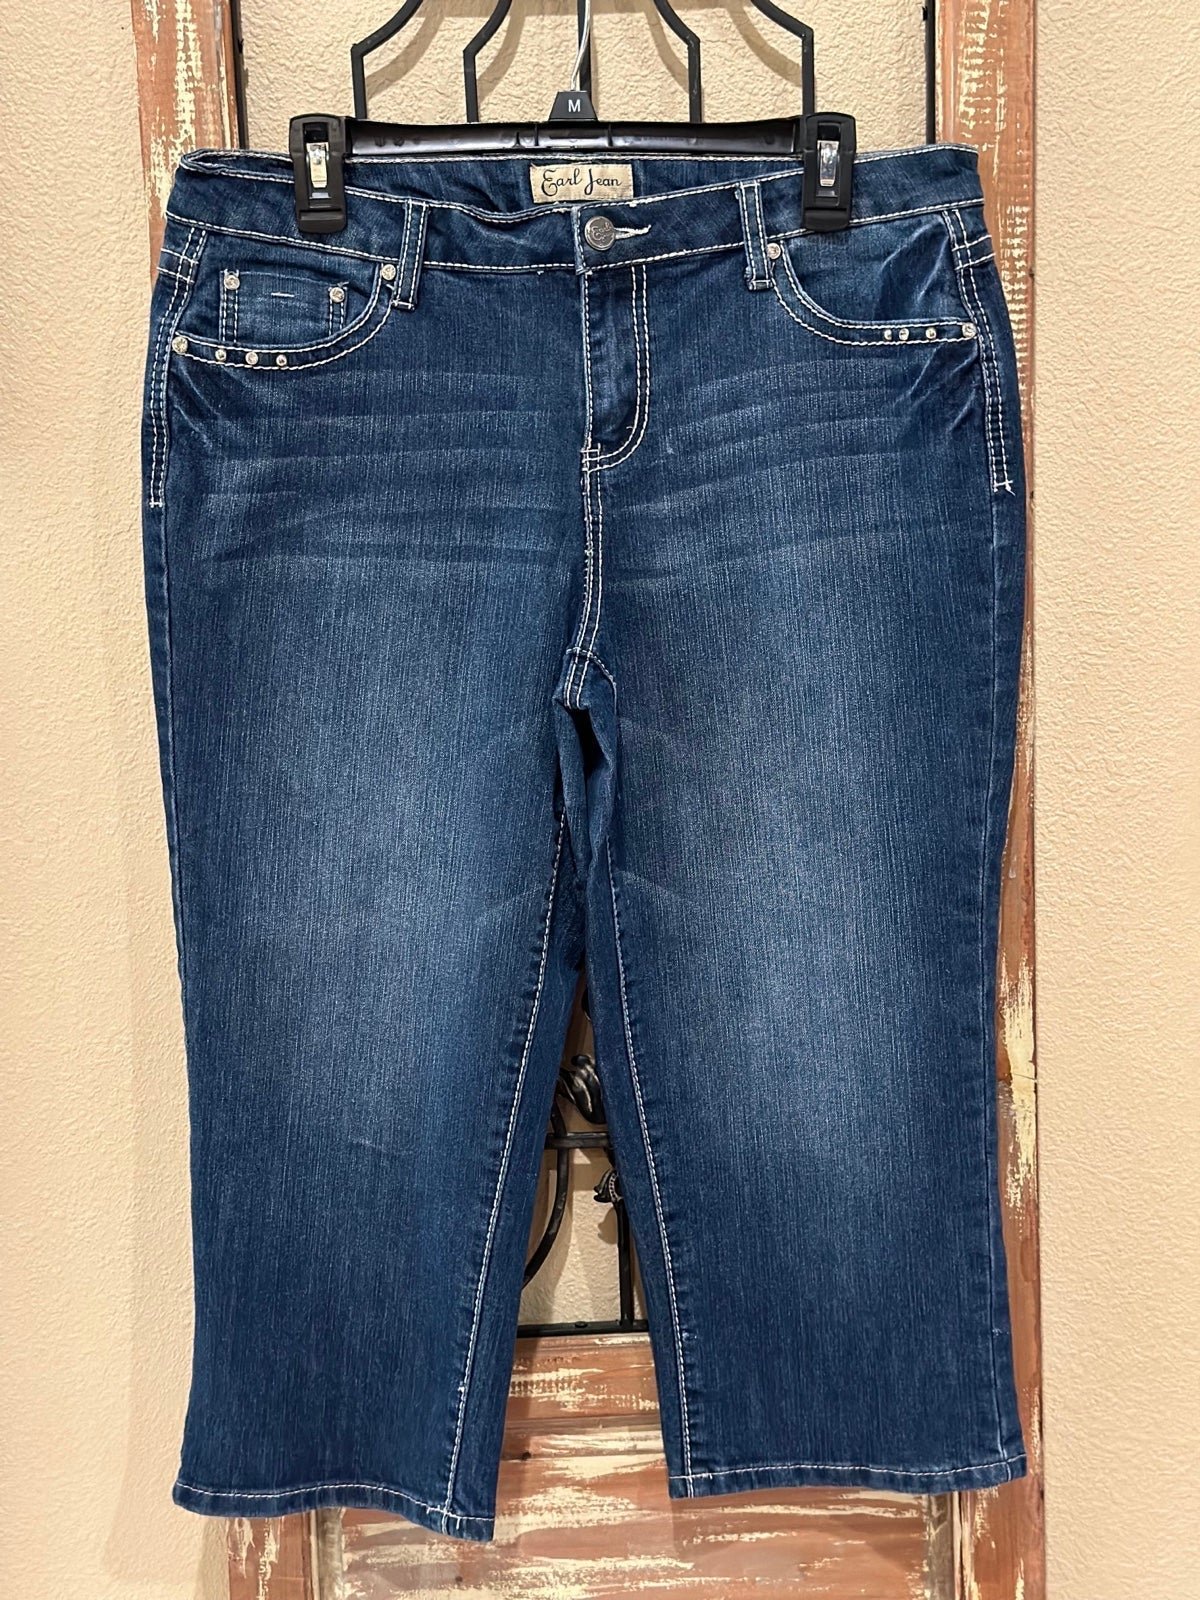 Simple Earl Jeans capris Gd2z09roI Hot Sale